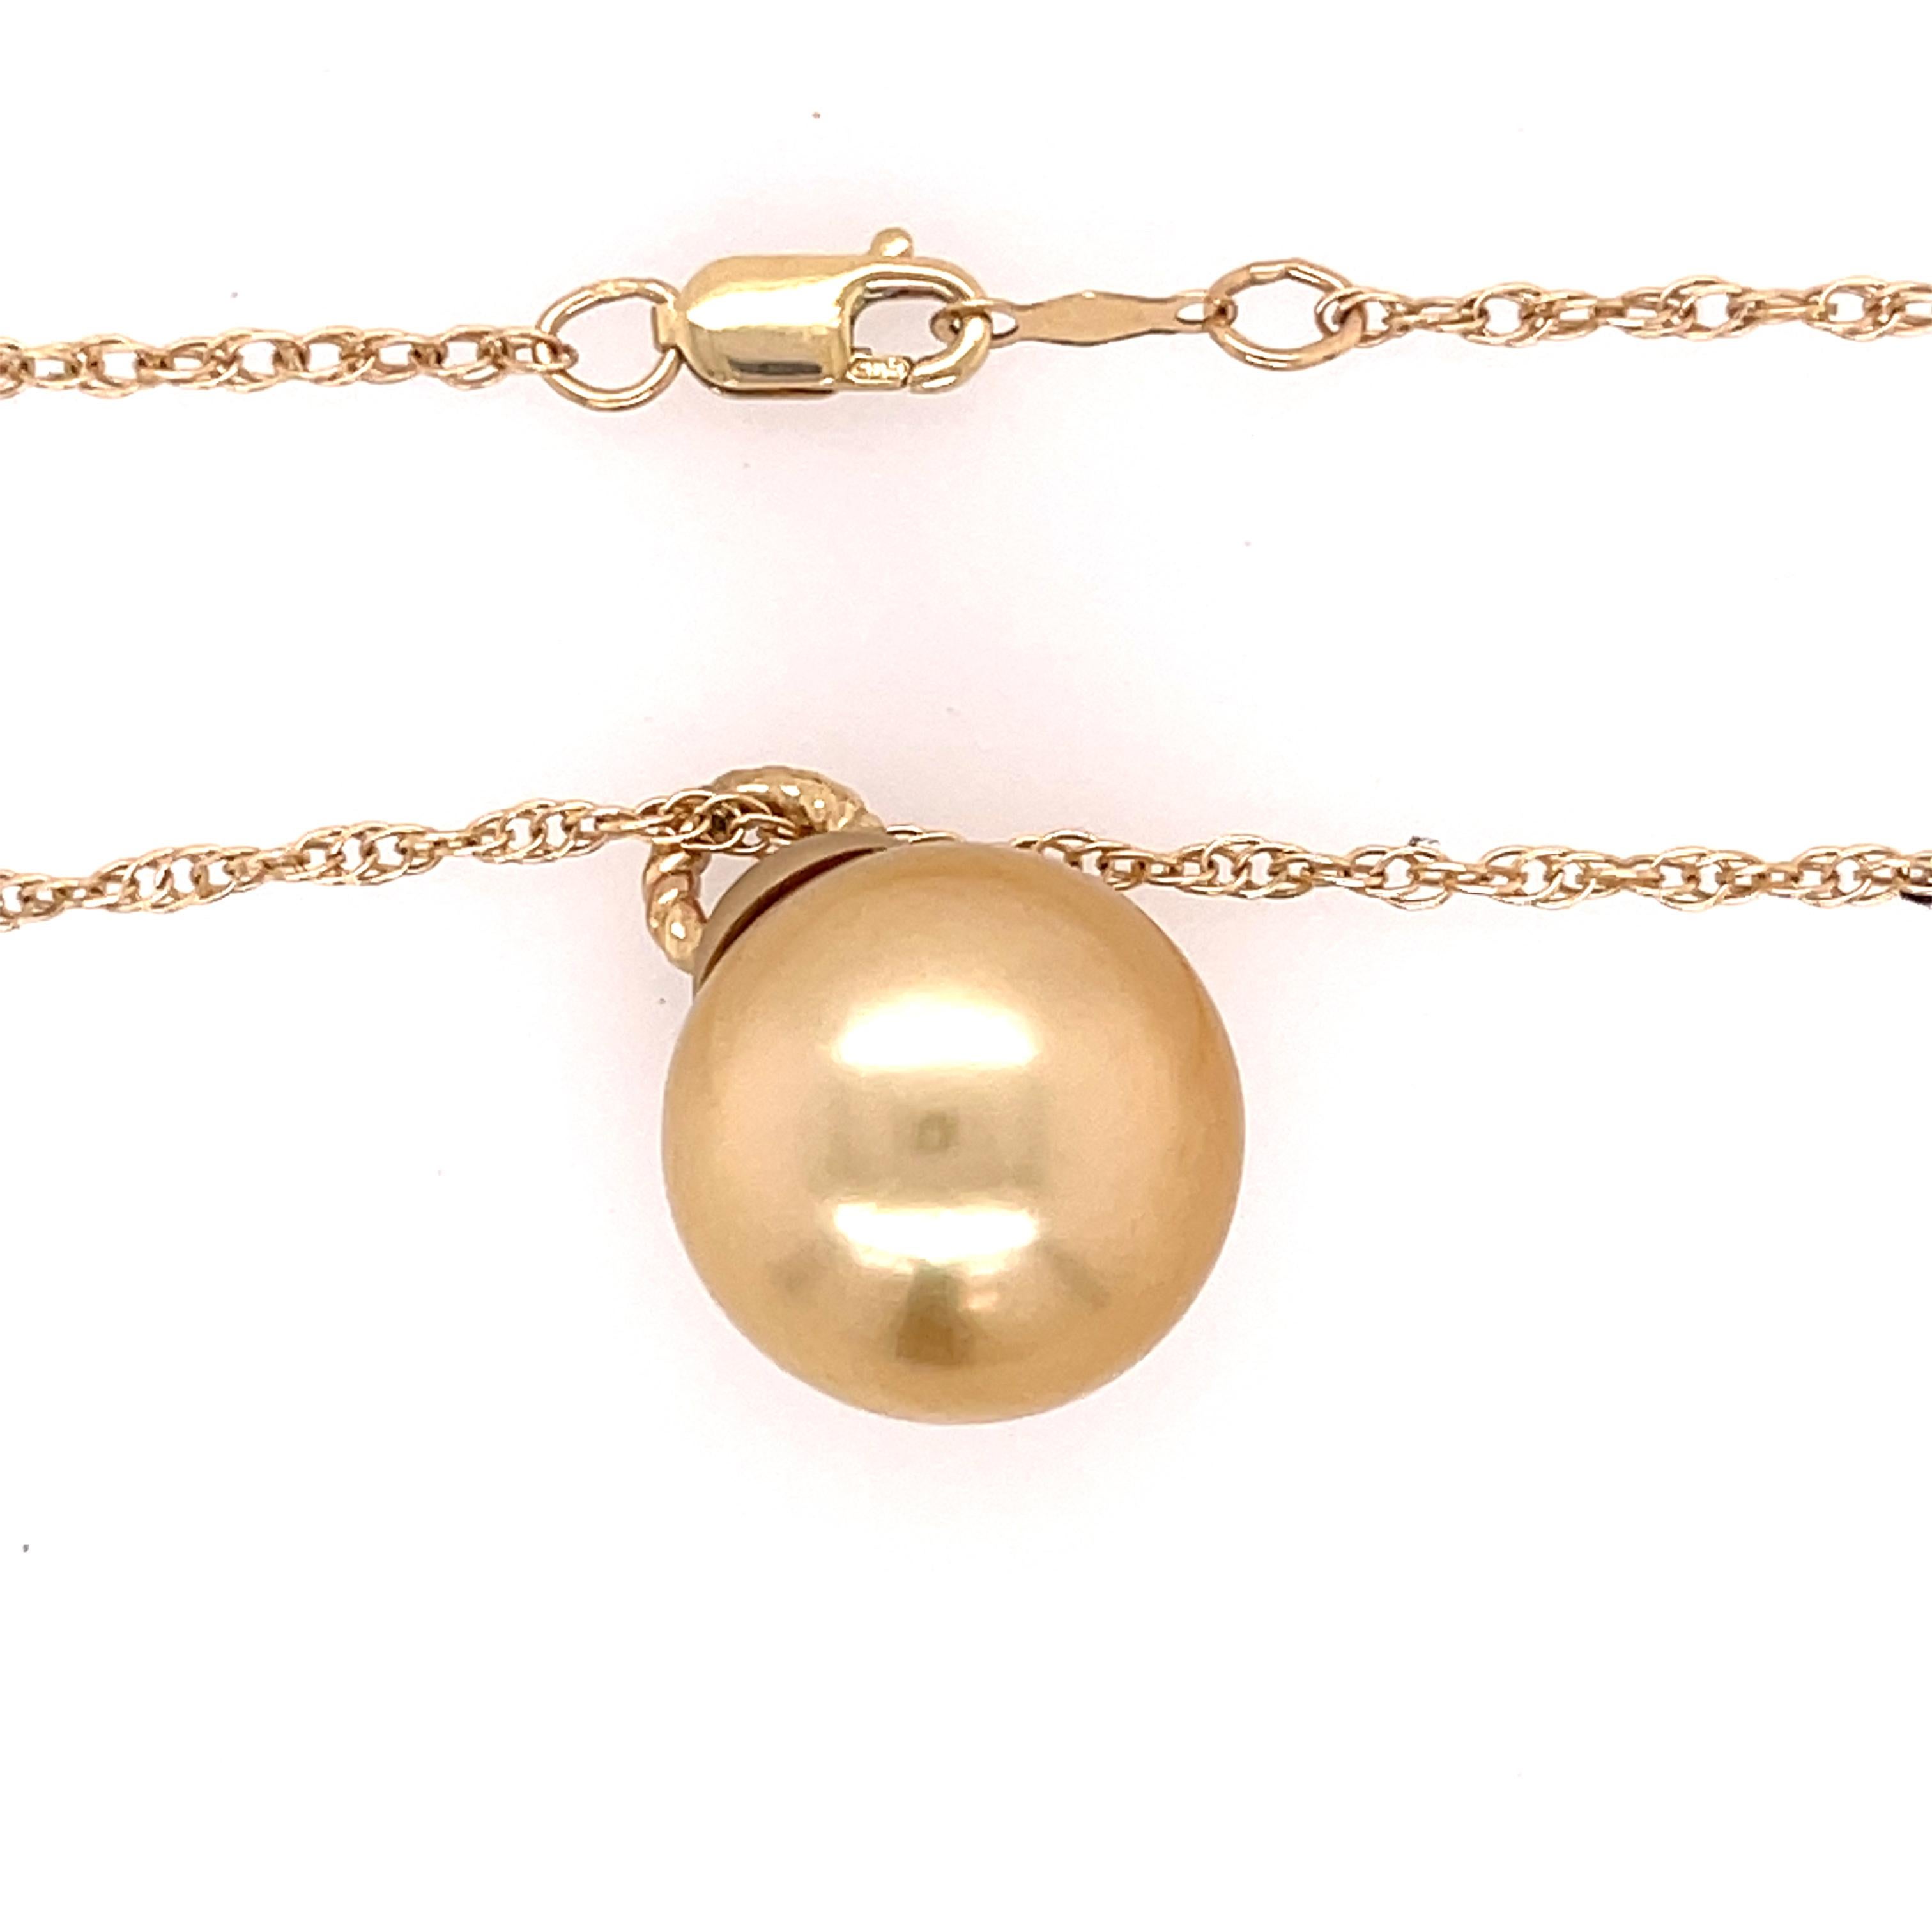 Goldener Südseeperlen-Anhänger an einer Kette aus 14k Gelbgold. Die Perle ist 13,50 mm breit und hängt an einer 18-Zoll-Seilkette. Gestempelt 14k.